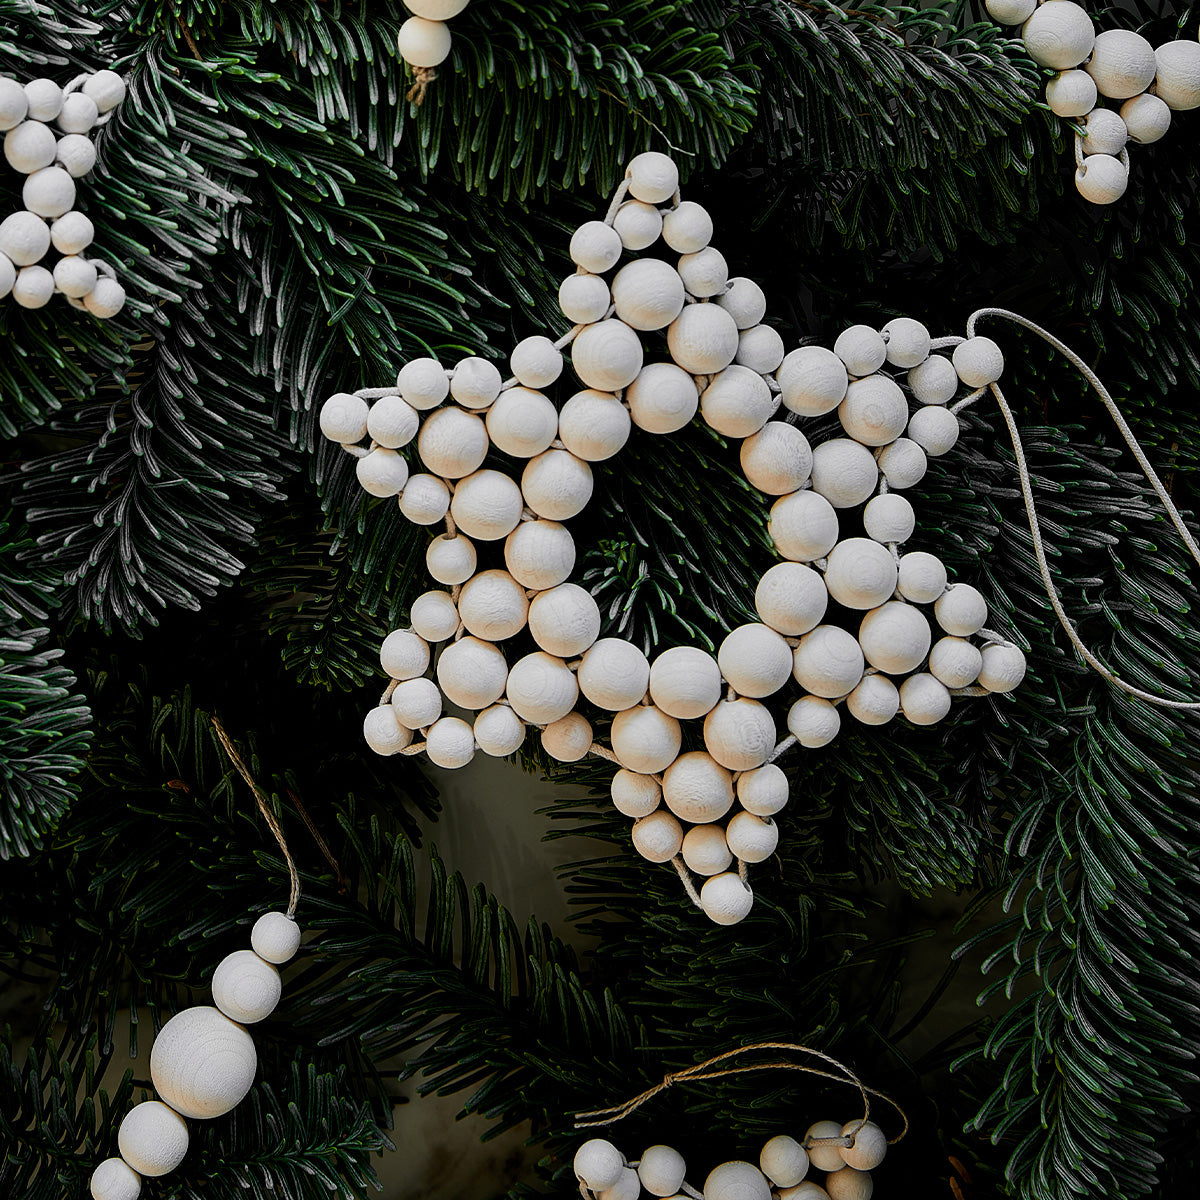 Star Ornament, 15 cm, white